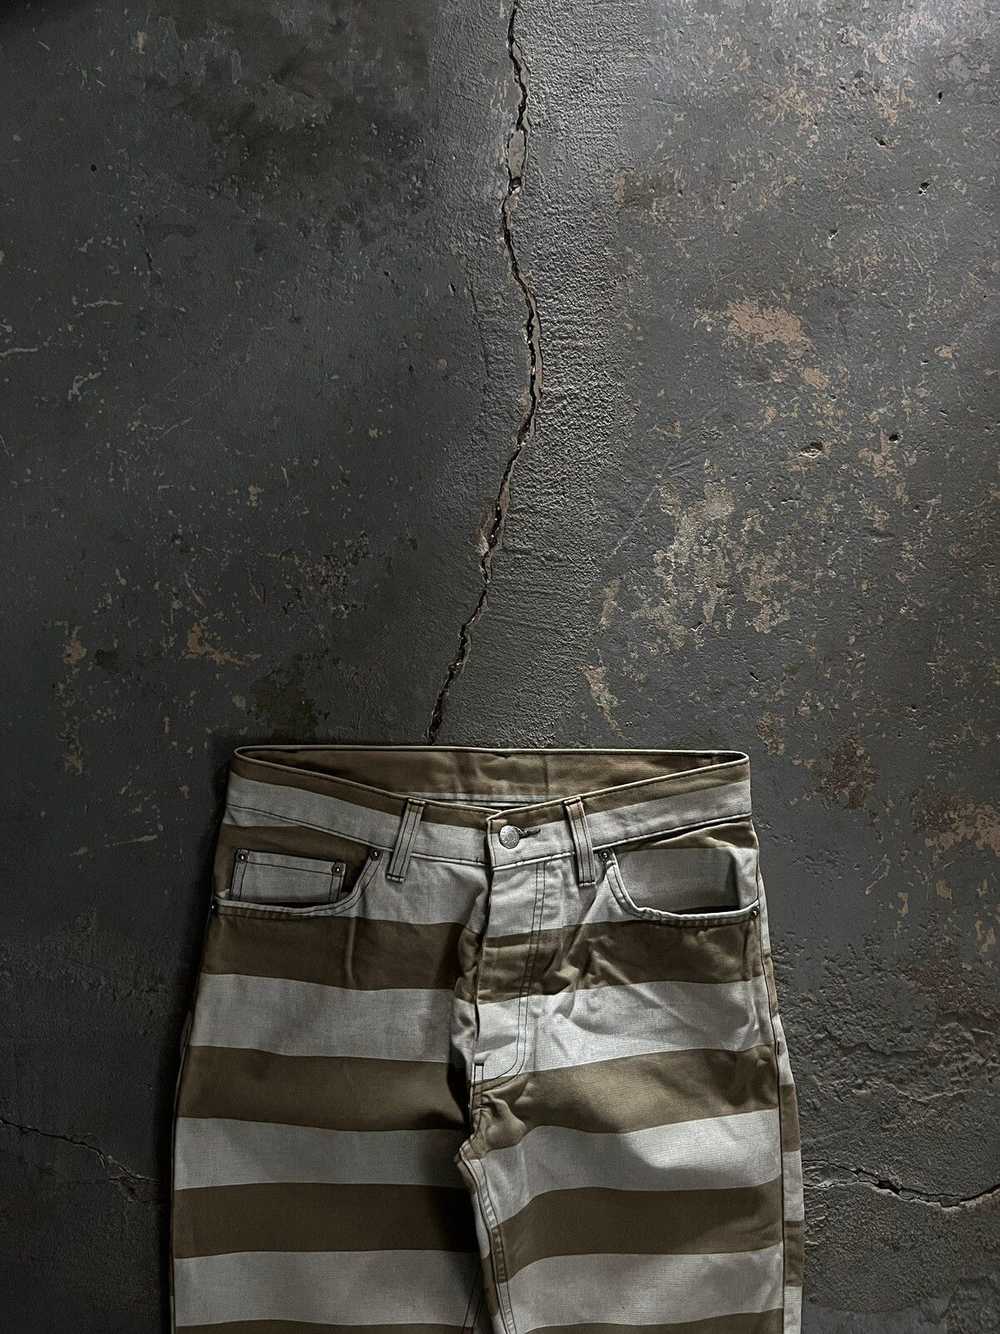 Helmut Lang SS99 Prisoner Jeans - image 2